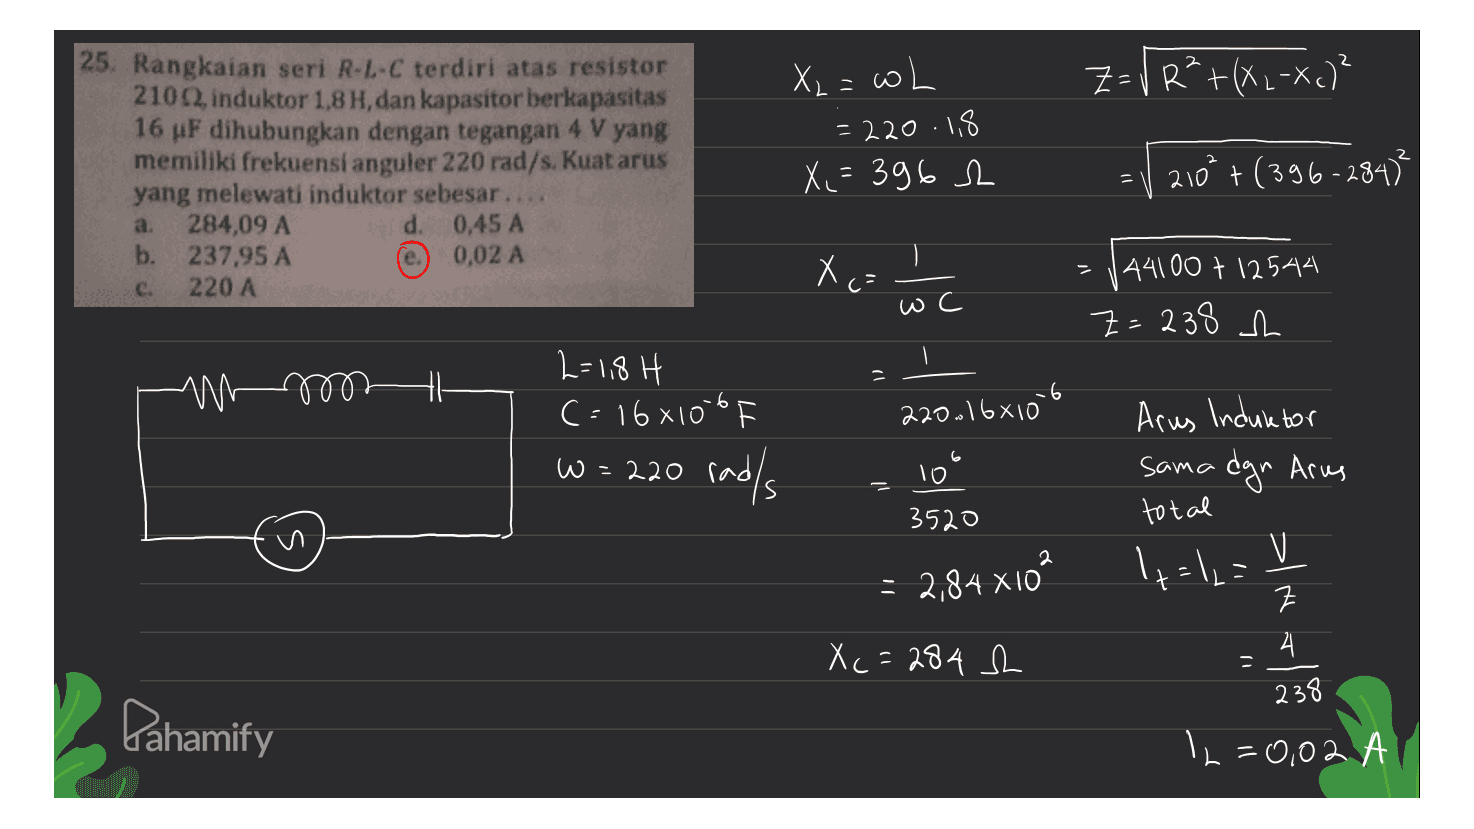 2 Z= V R²+(XL-Xc)² 25. Rangkaian seri R-L-C terdiri atas resistor 210, induktor 1,8 H, dan kapasitor berkapasitas 16 uF dihubungkan dengan tegangan 4 V yang memiliki frekuensi anguler 220 rad/s. Kuat arus yang melewati induktor sebesar.. 284,09 A d. 0,45 A b. 237,95 A 0,02 A 220 A X₂ = wh = 220.18 X,=3962 | 210² + (396-284² a. e. Xo: c. c- ) wc 144100 + 12544 Z=238 h M4 2=1,8 H c=16x10-6 w = 220 radls 220.16610lt Arus Induktor w= 10 3520 sama dgn Arus total 2 +=12= = 2,84 XIÓ SIN 크 4 X c = 284 h 238 Pahamify 12=0,02 A = A 